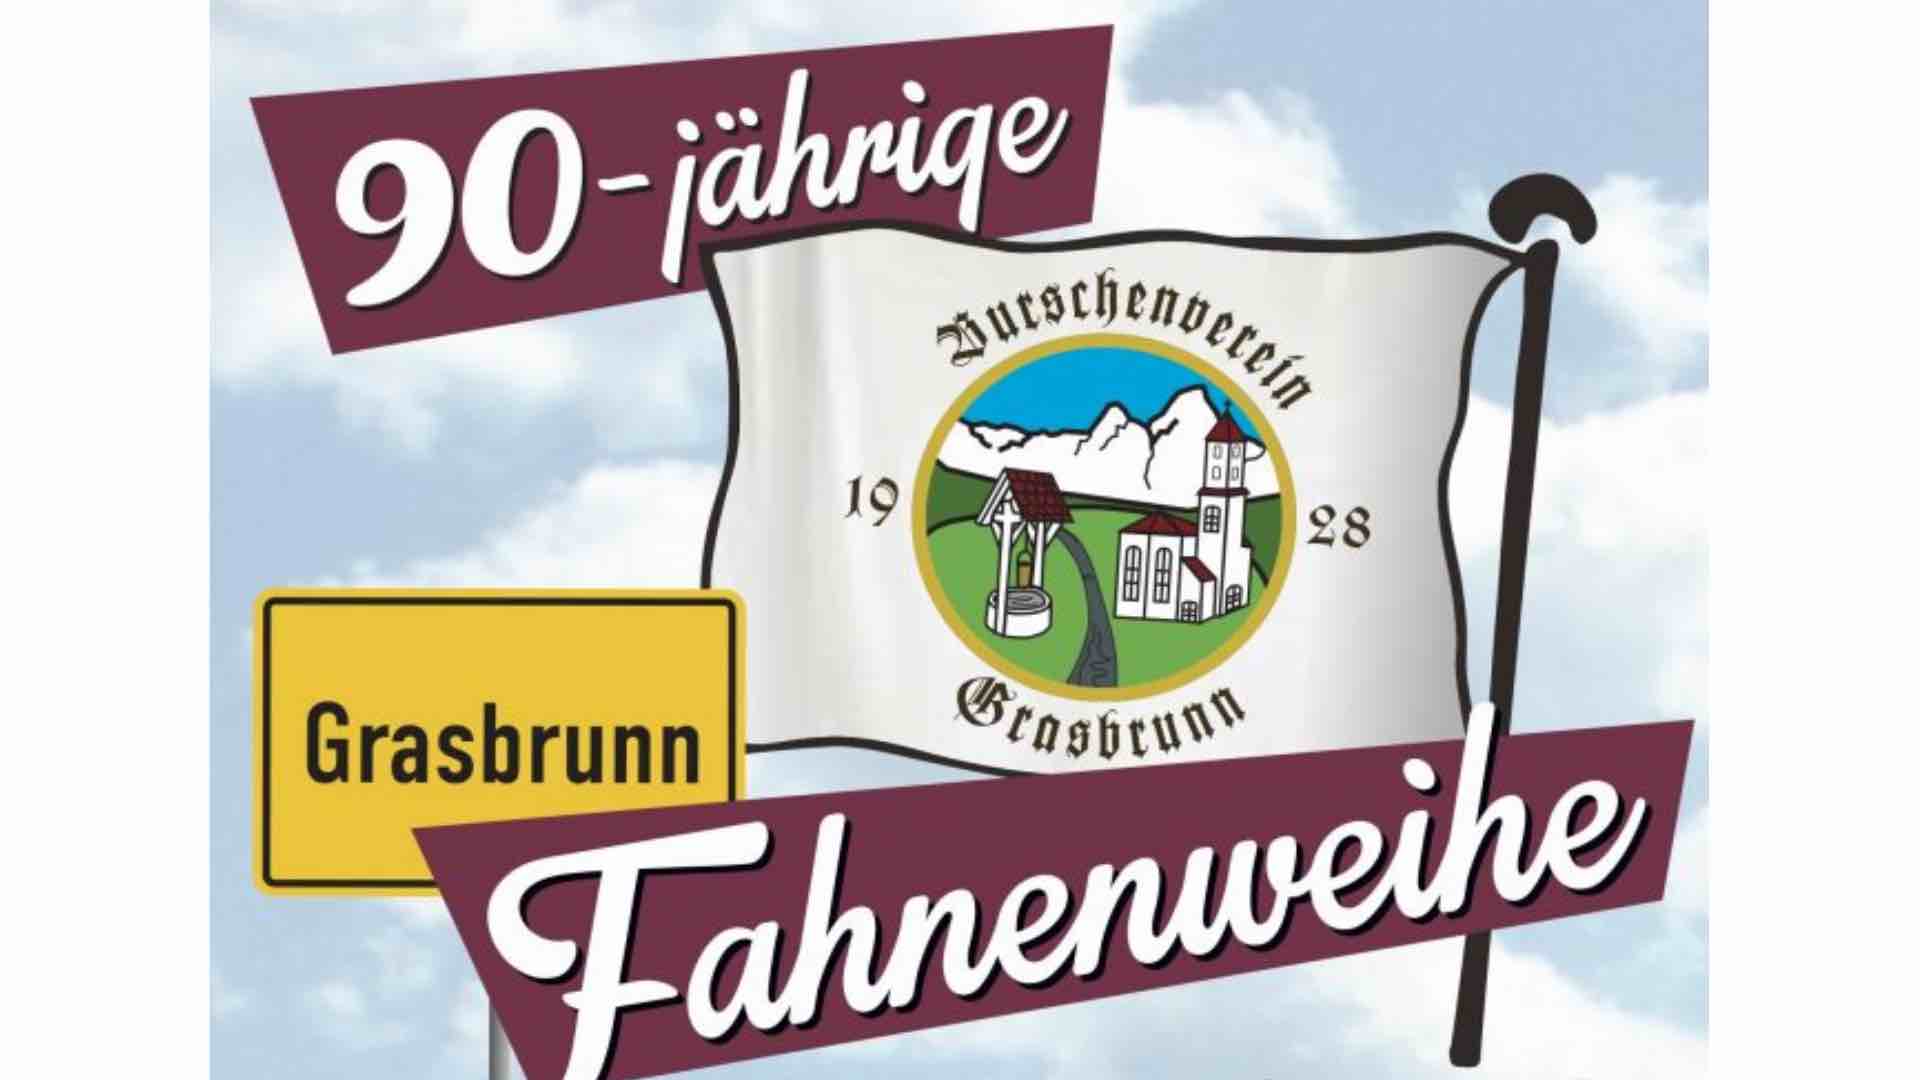 90-jährige Fahnenweihe in Grasbrunn